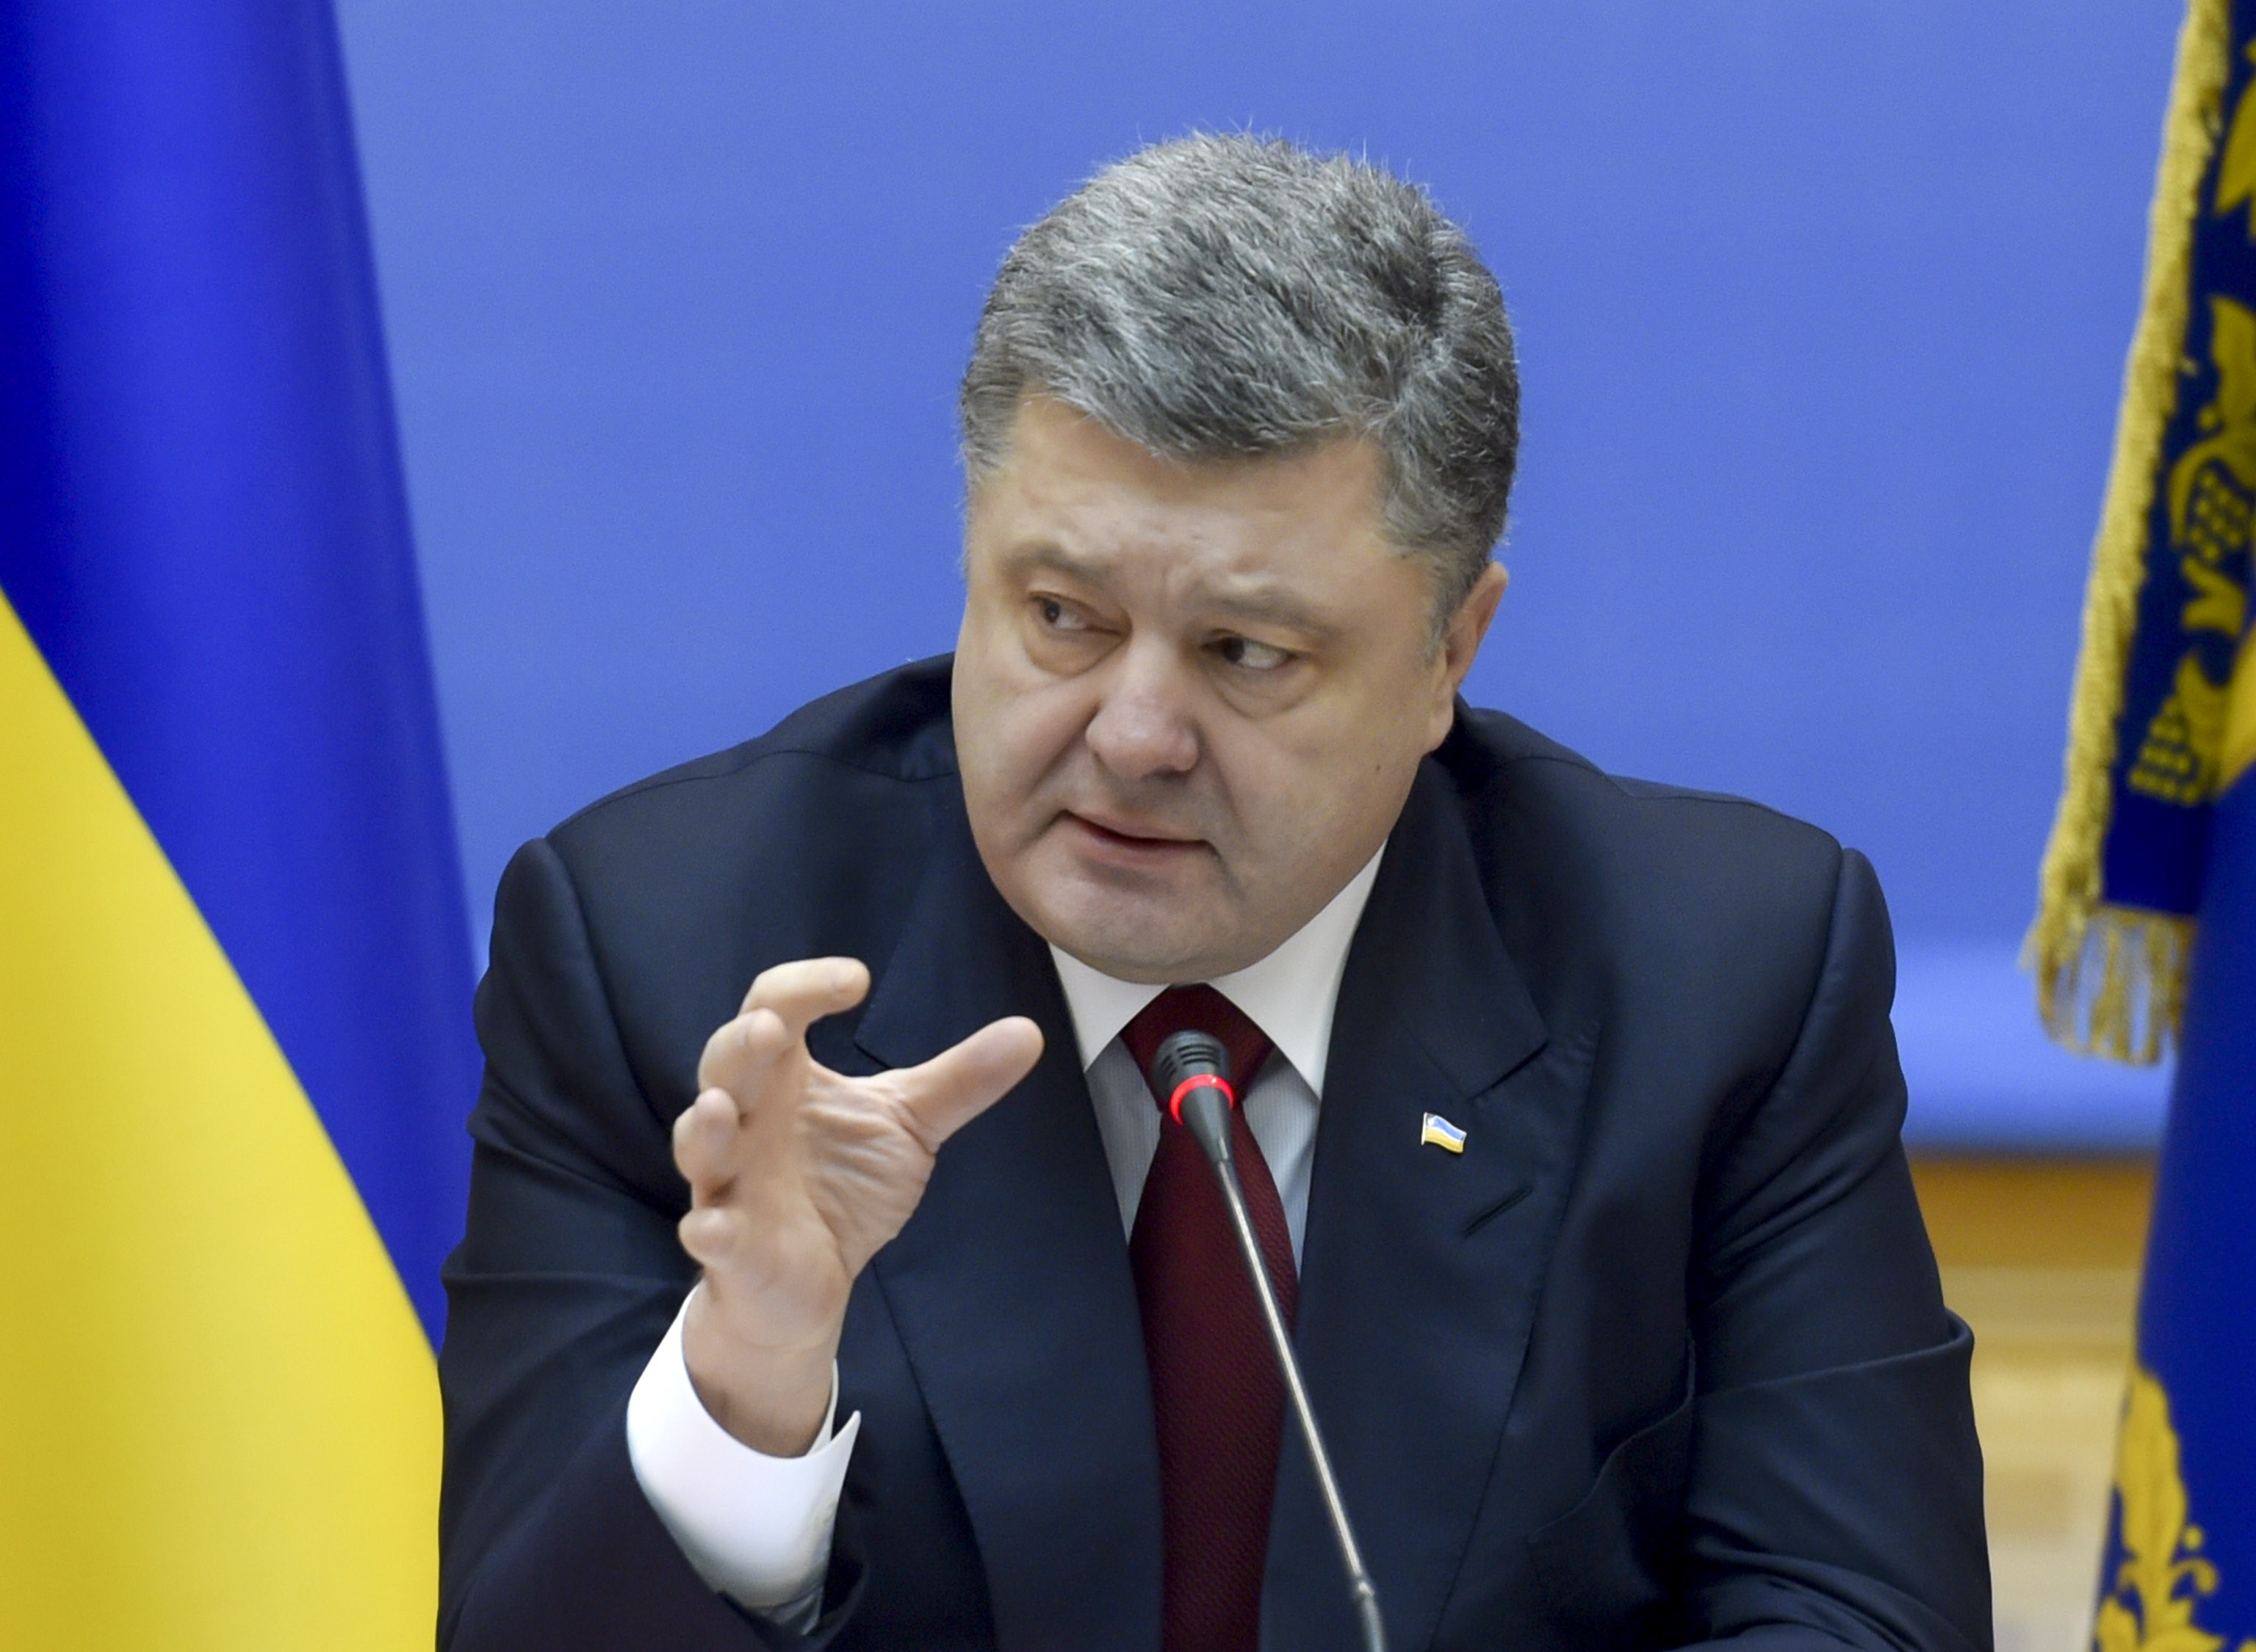 "Договорились": Украина уже скоро получит макрофинансовую помощь от Европы - Порошенко